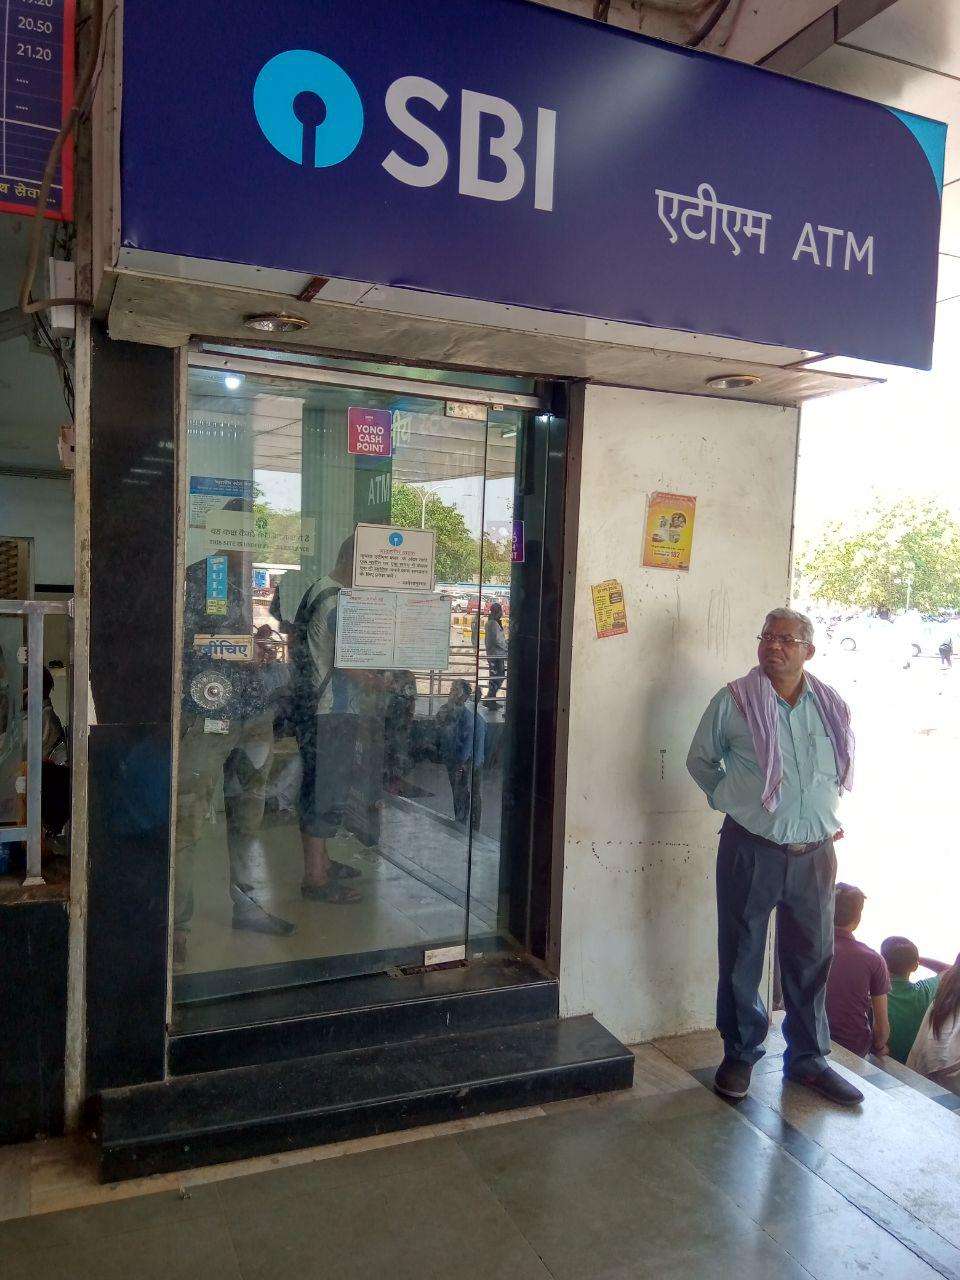 ATM kharab